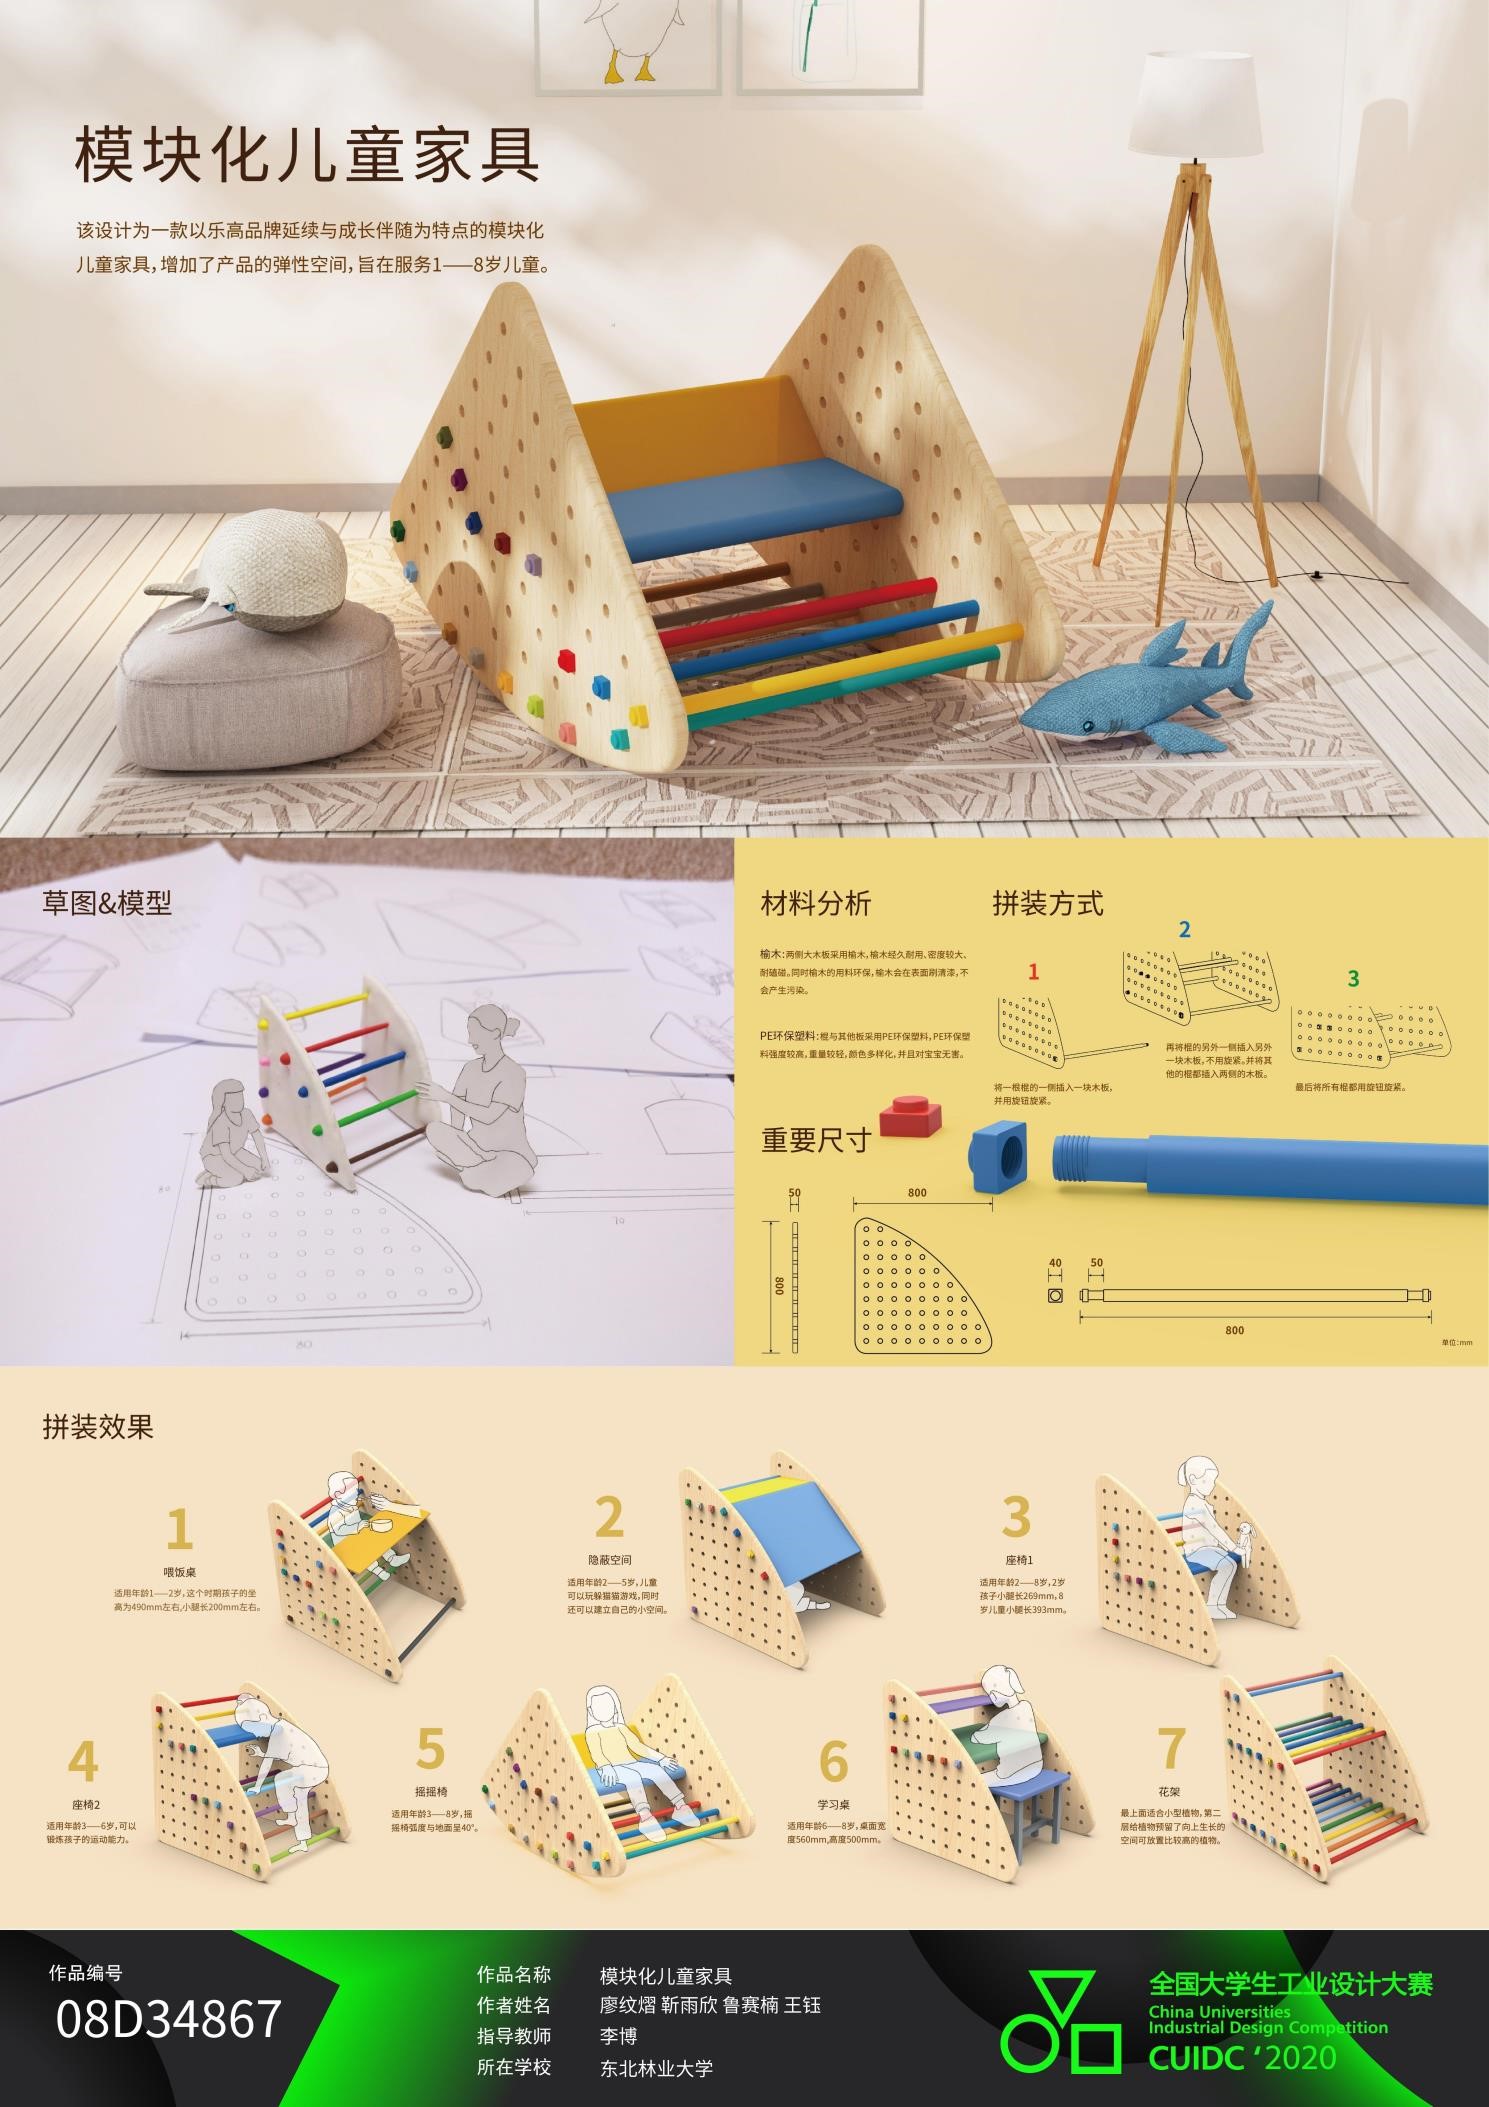 刘九庆 模块化移动售货车设计 王诗雨等 2017 战丽 模块化儿童家具 廖